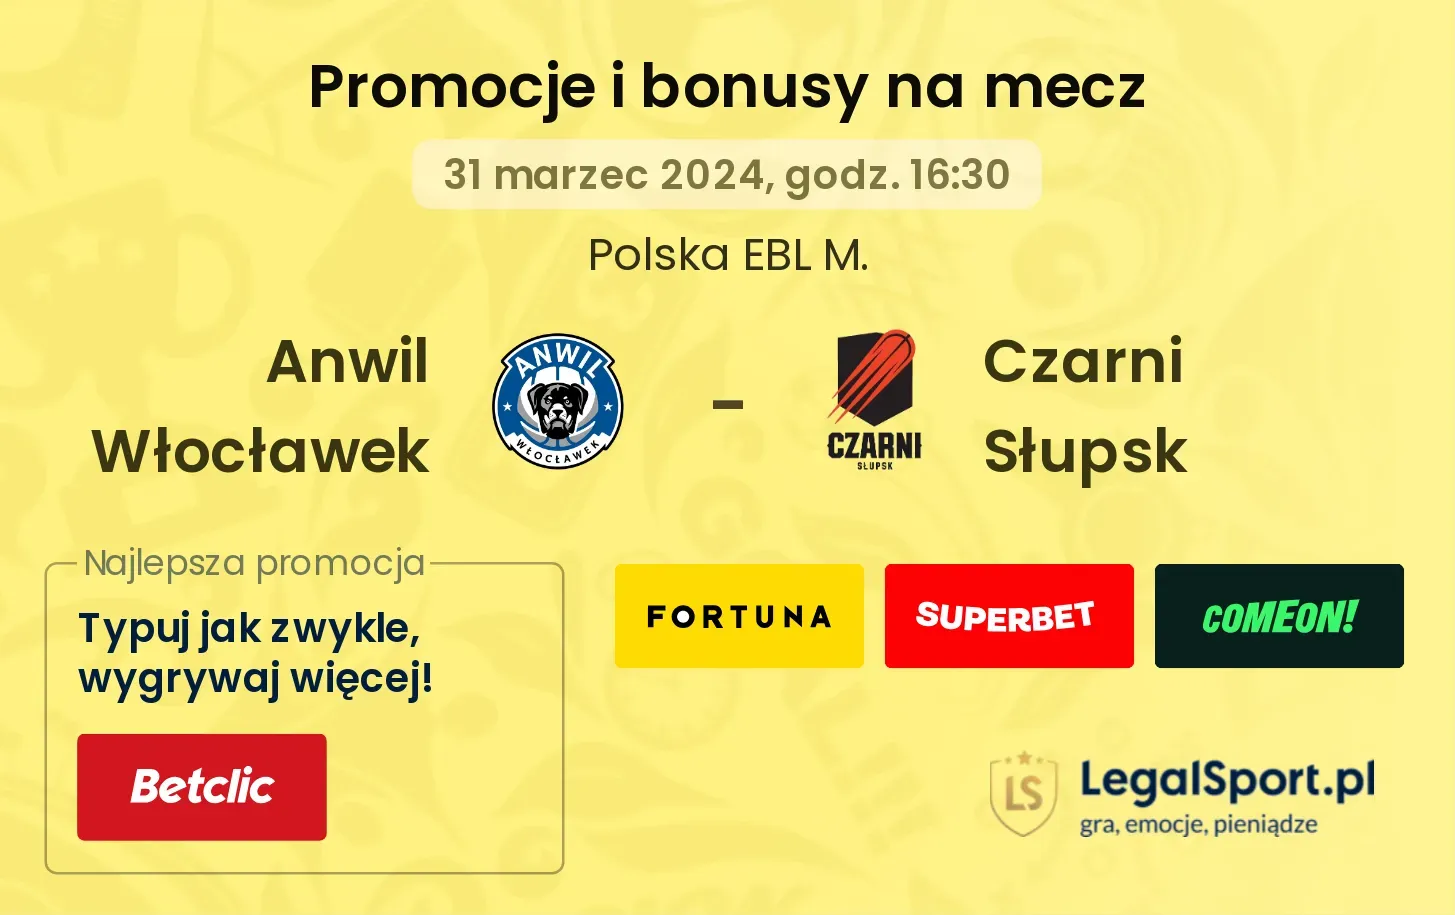 Anwil Włocławek - Czarni Słupsk promocje bonusy na mecz